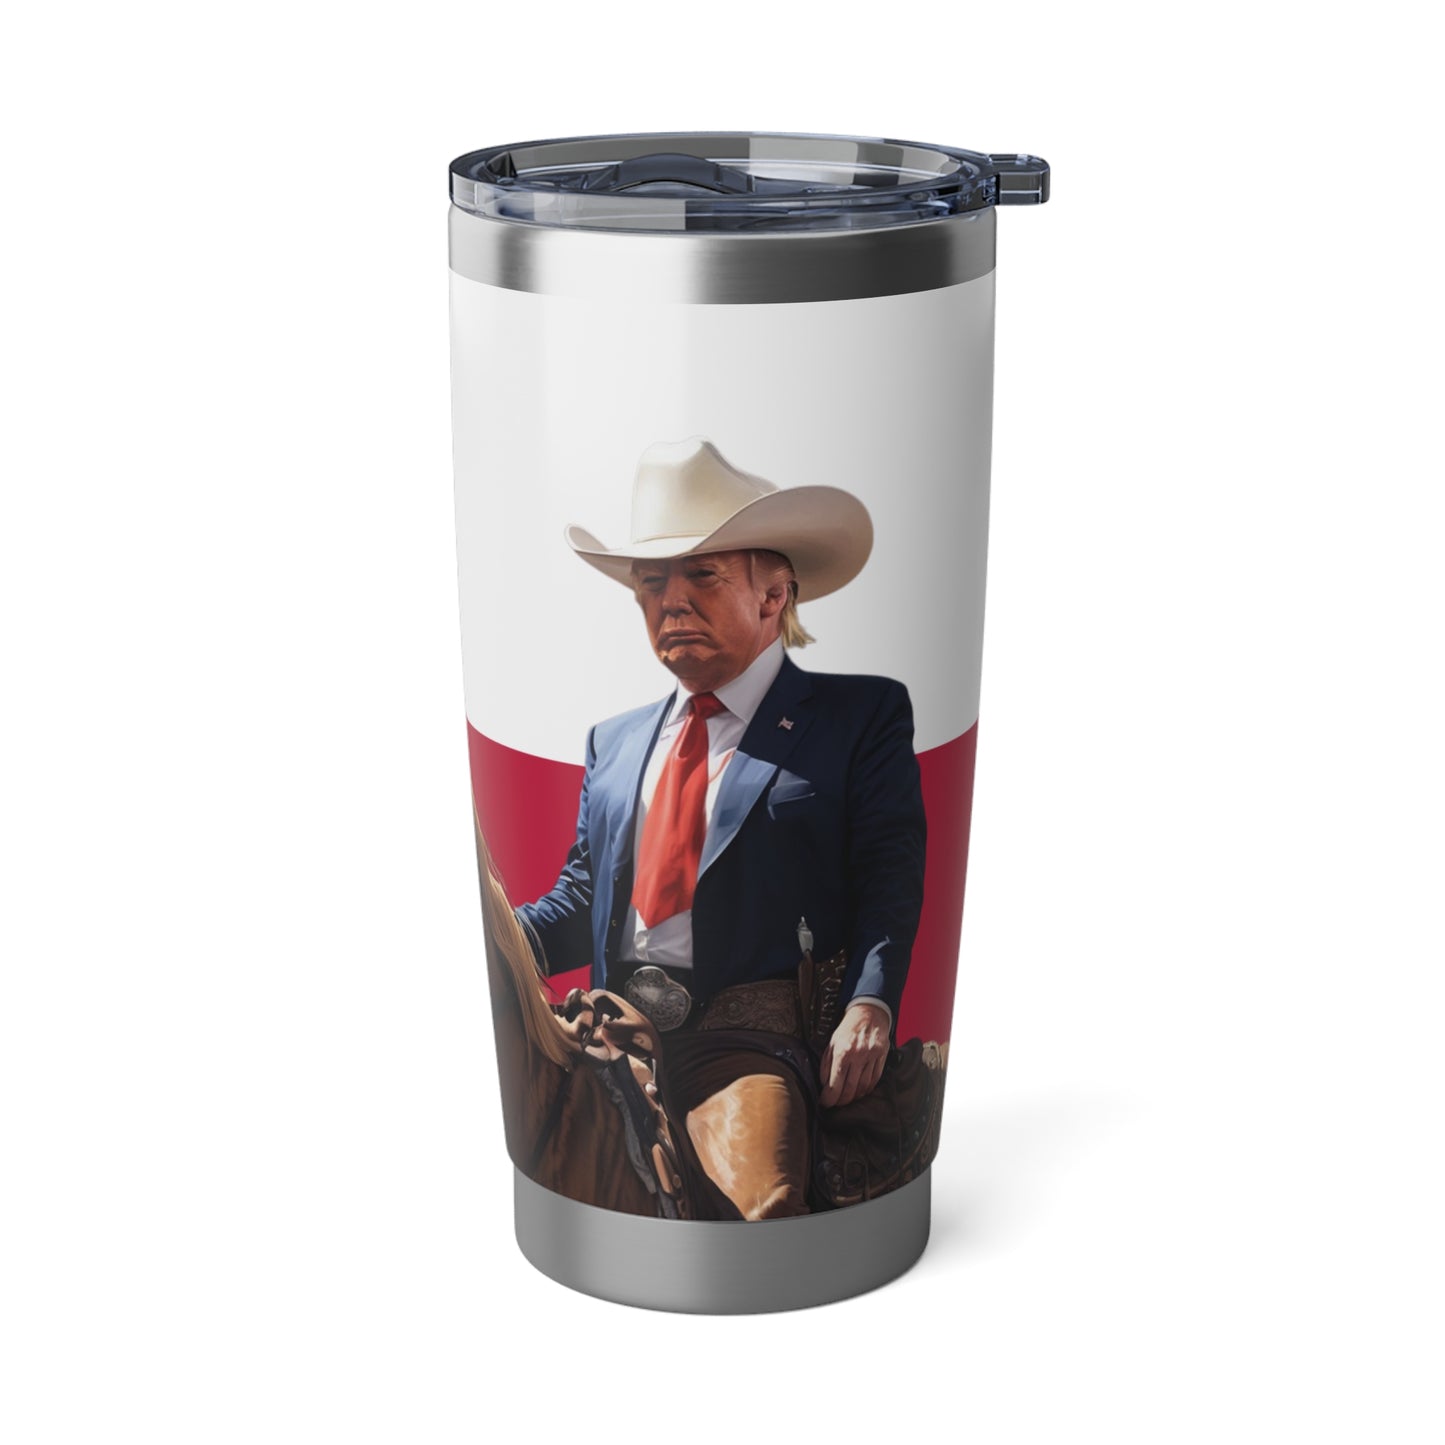 Machen Sie Texas wieder großartig Cowboy Trump Edelstahl Vagabond 20oz Tumbler